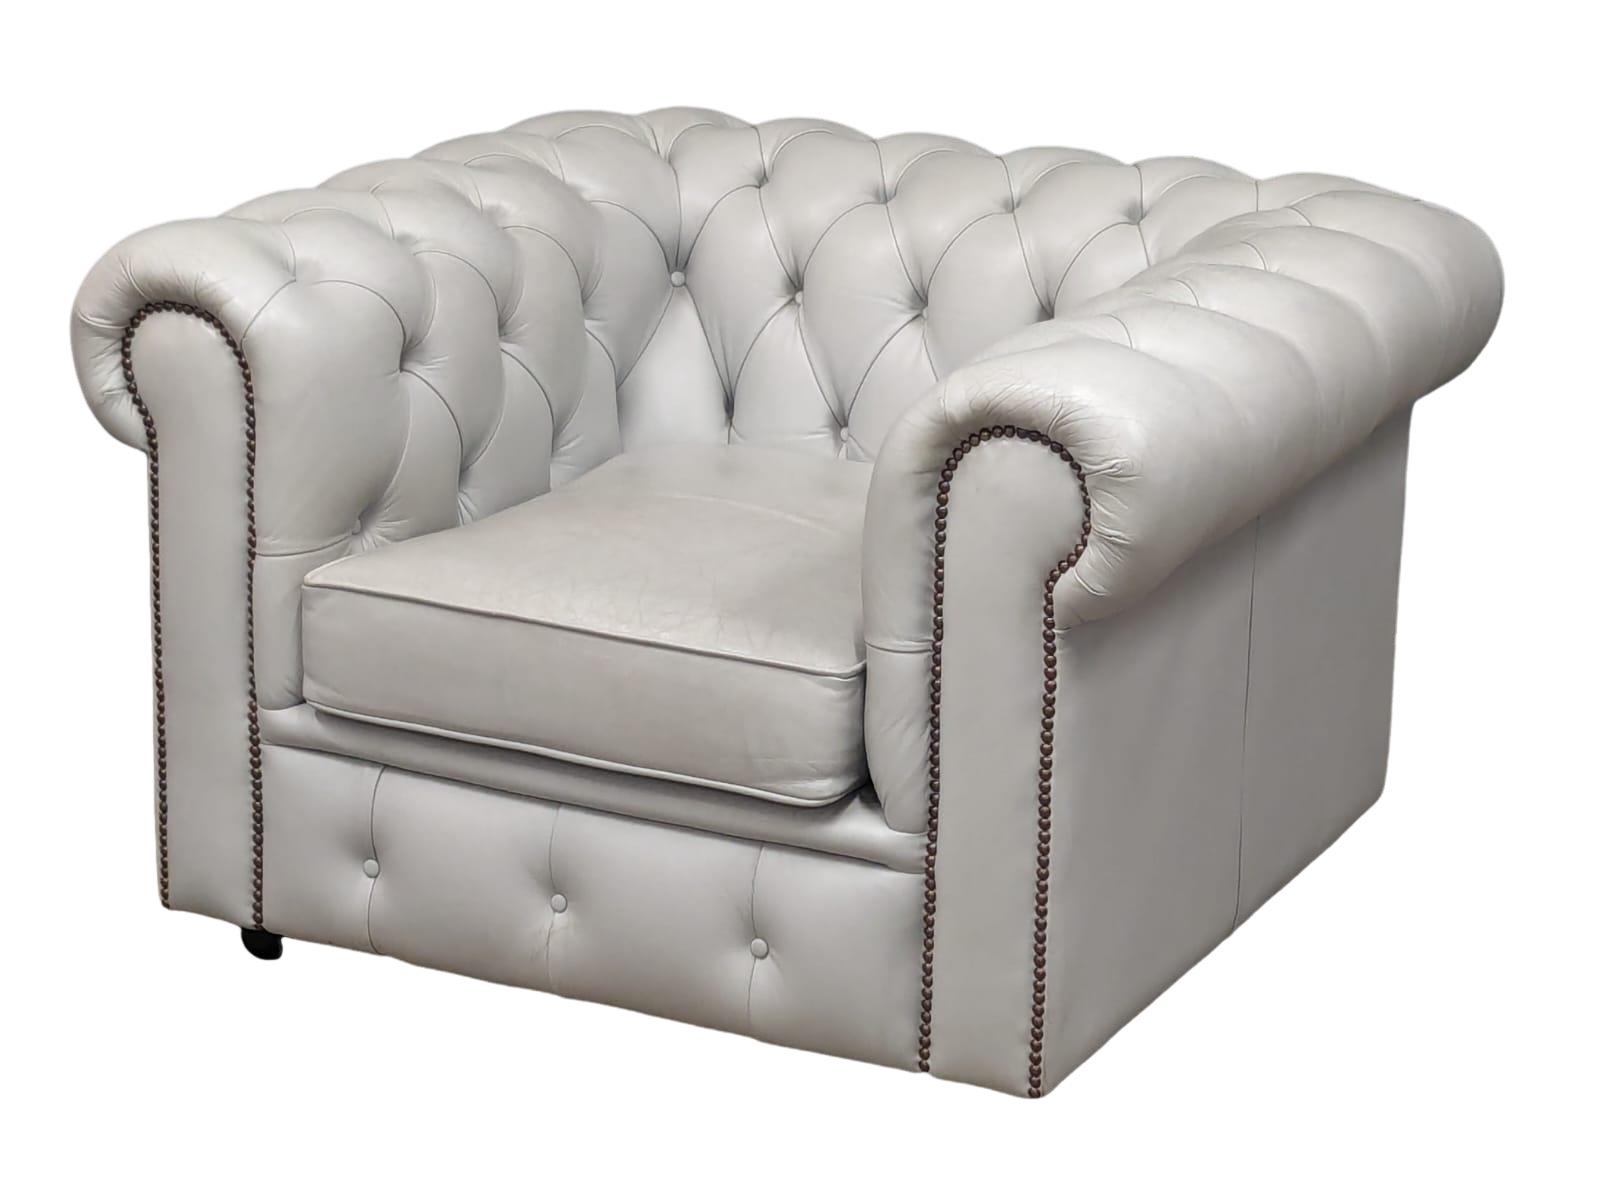 A deep button club style armchair